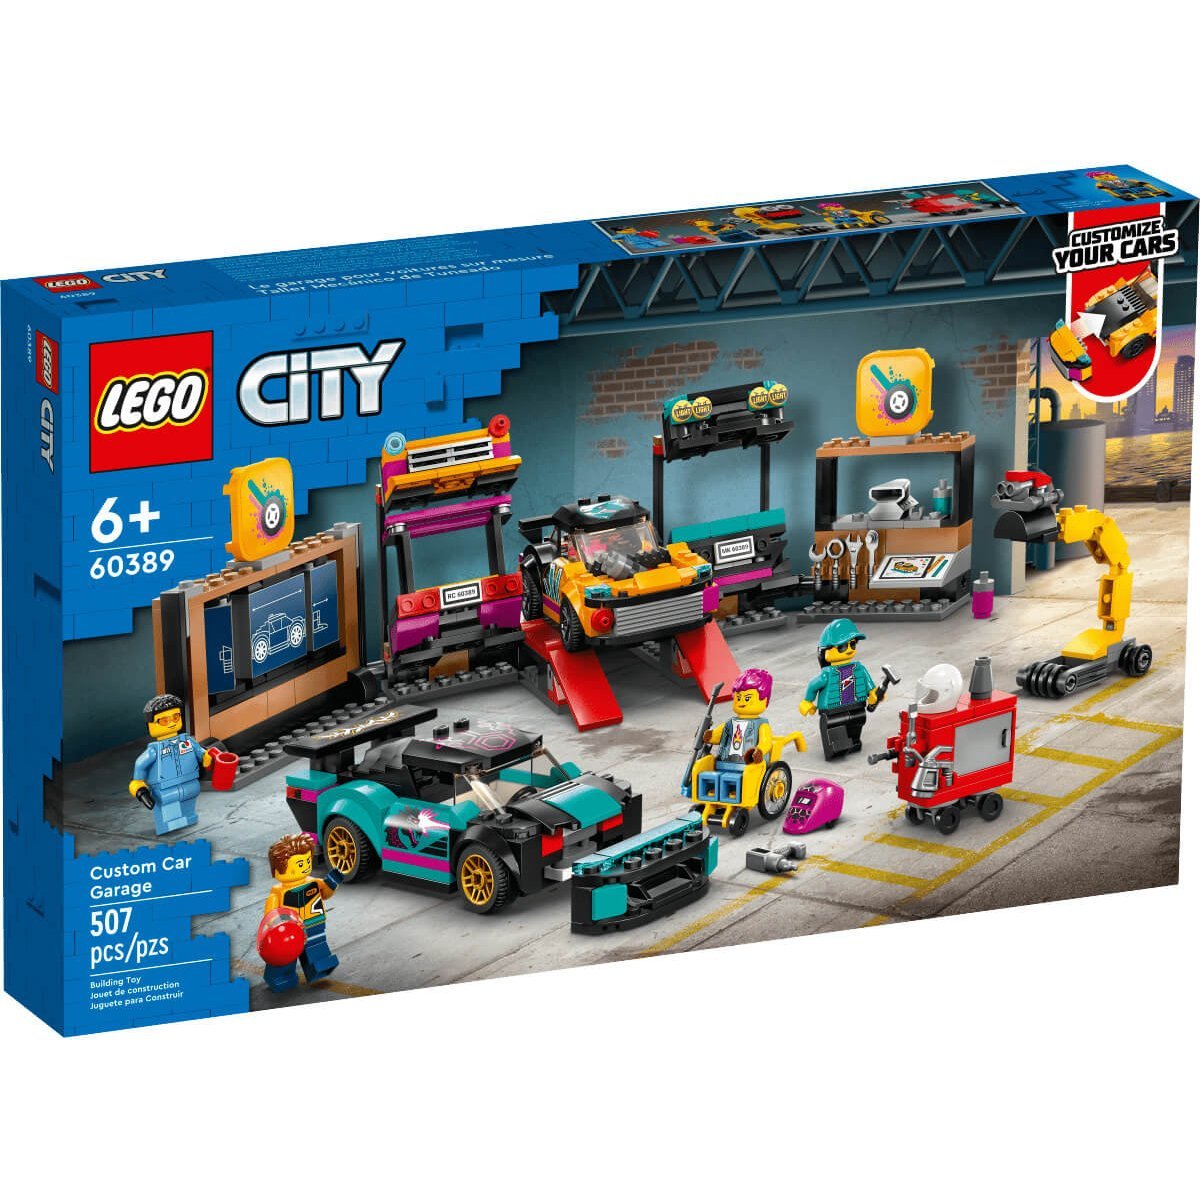 Taller Mecánico de Tuneado Lego City Great Vehicles